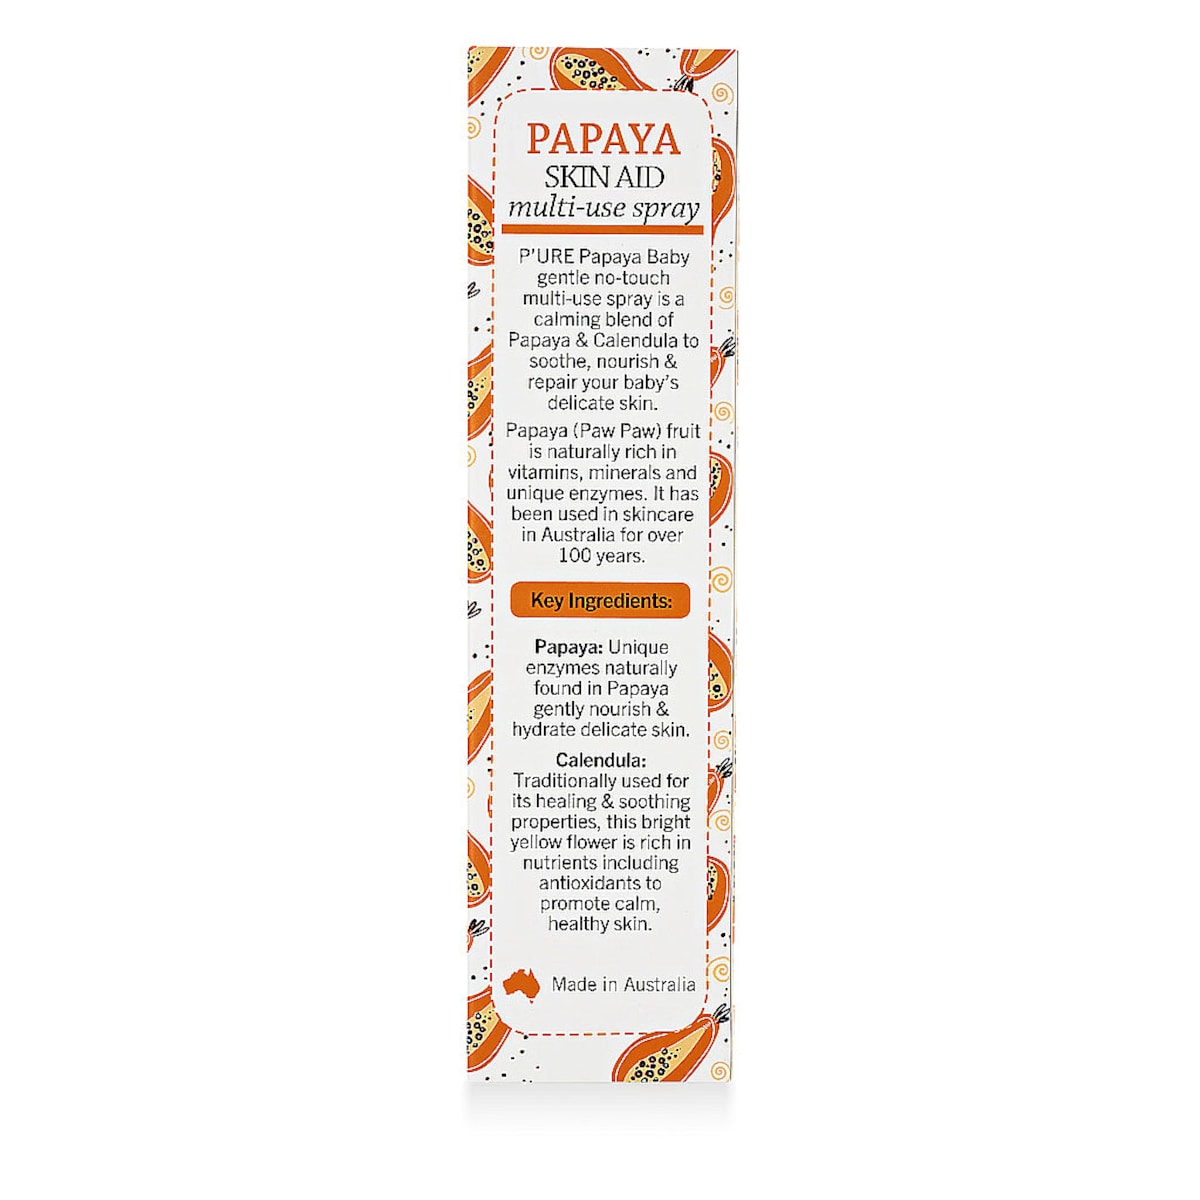 P'ure Papayacare Papaya Baby Skin Aid Spray 80ml